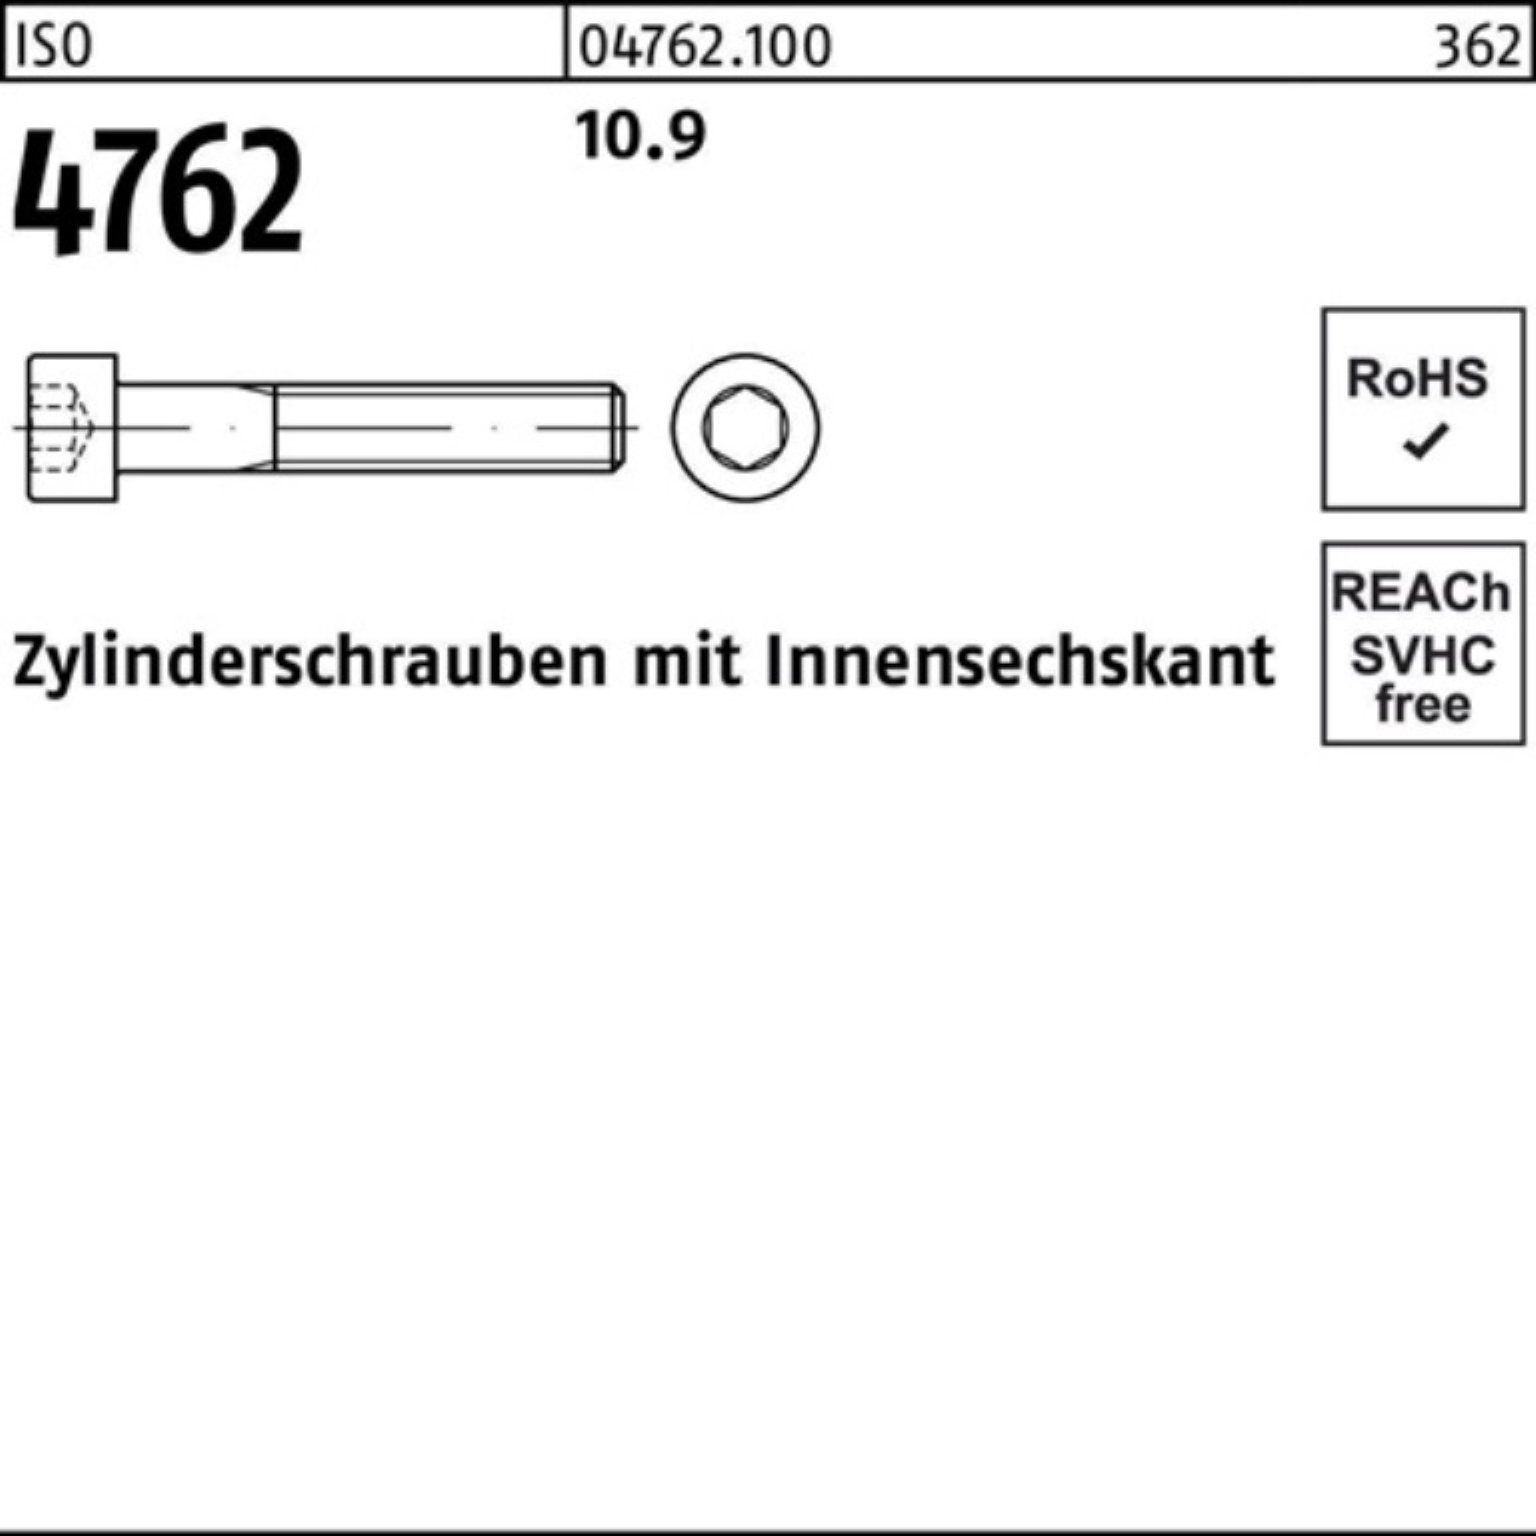 22 Zylinderschraube 500er Zylinderschraube M4x Stück Pack Innen-6kt 500 ISO Reyher 4762 10.9